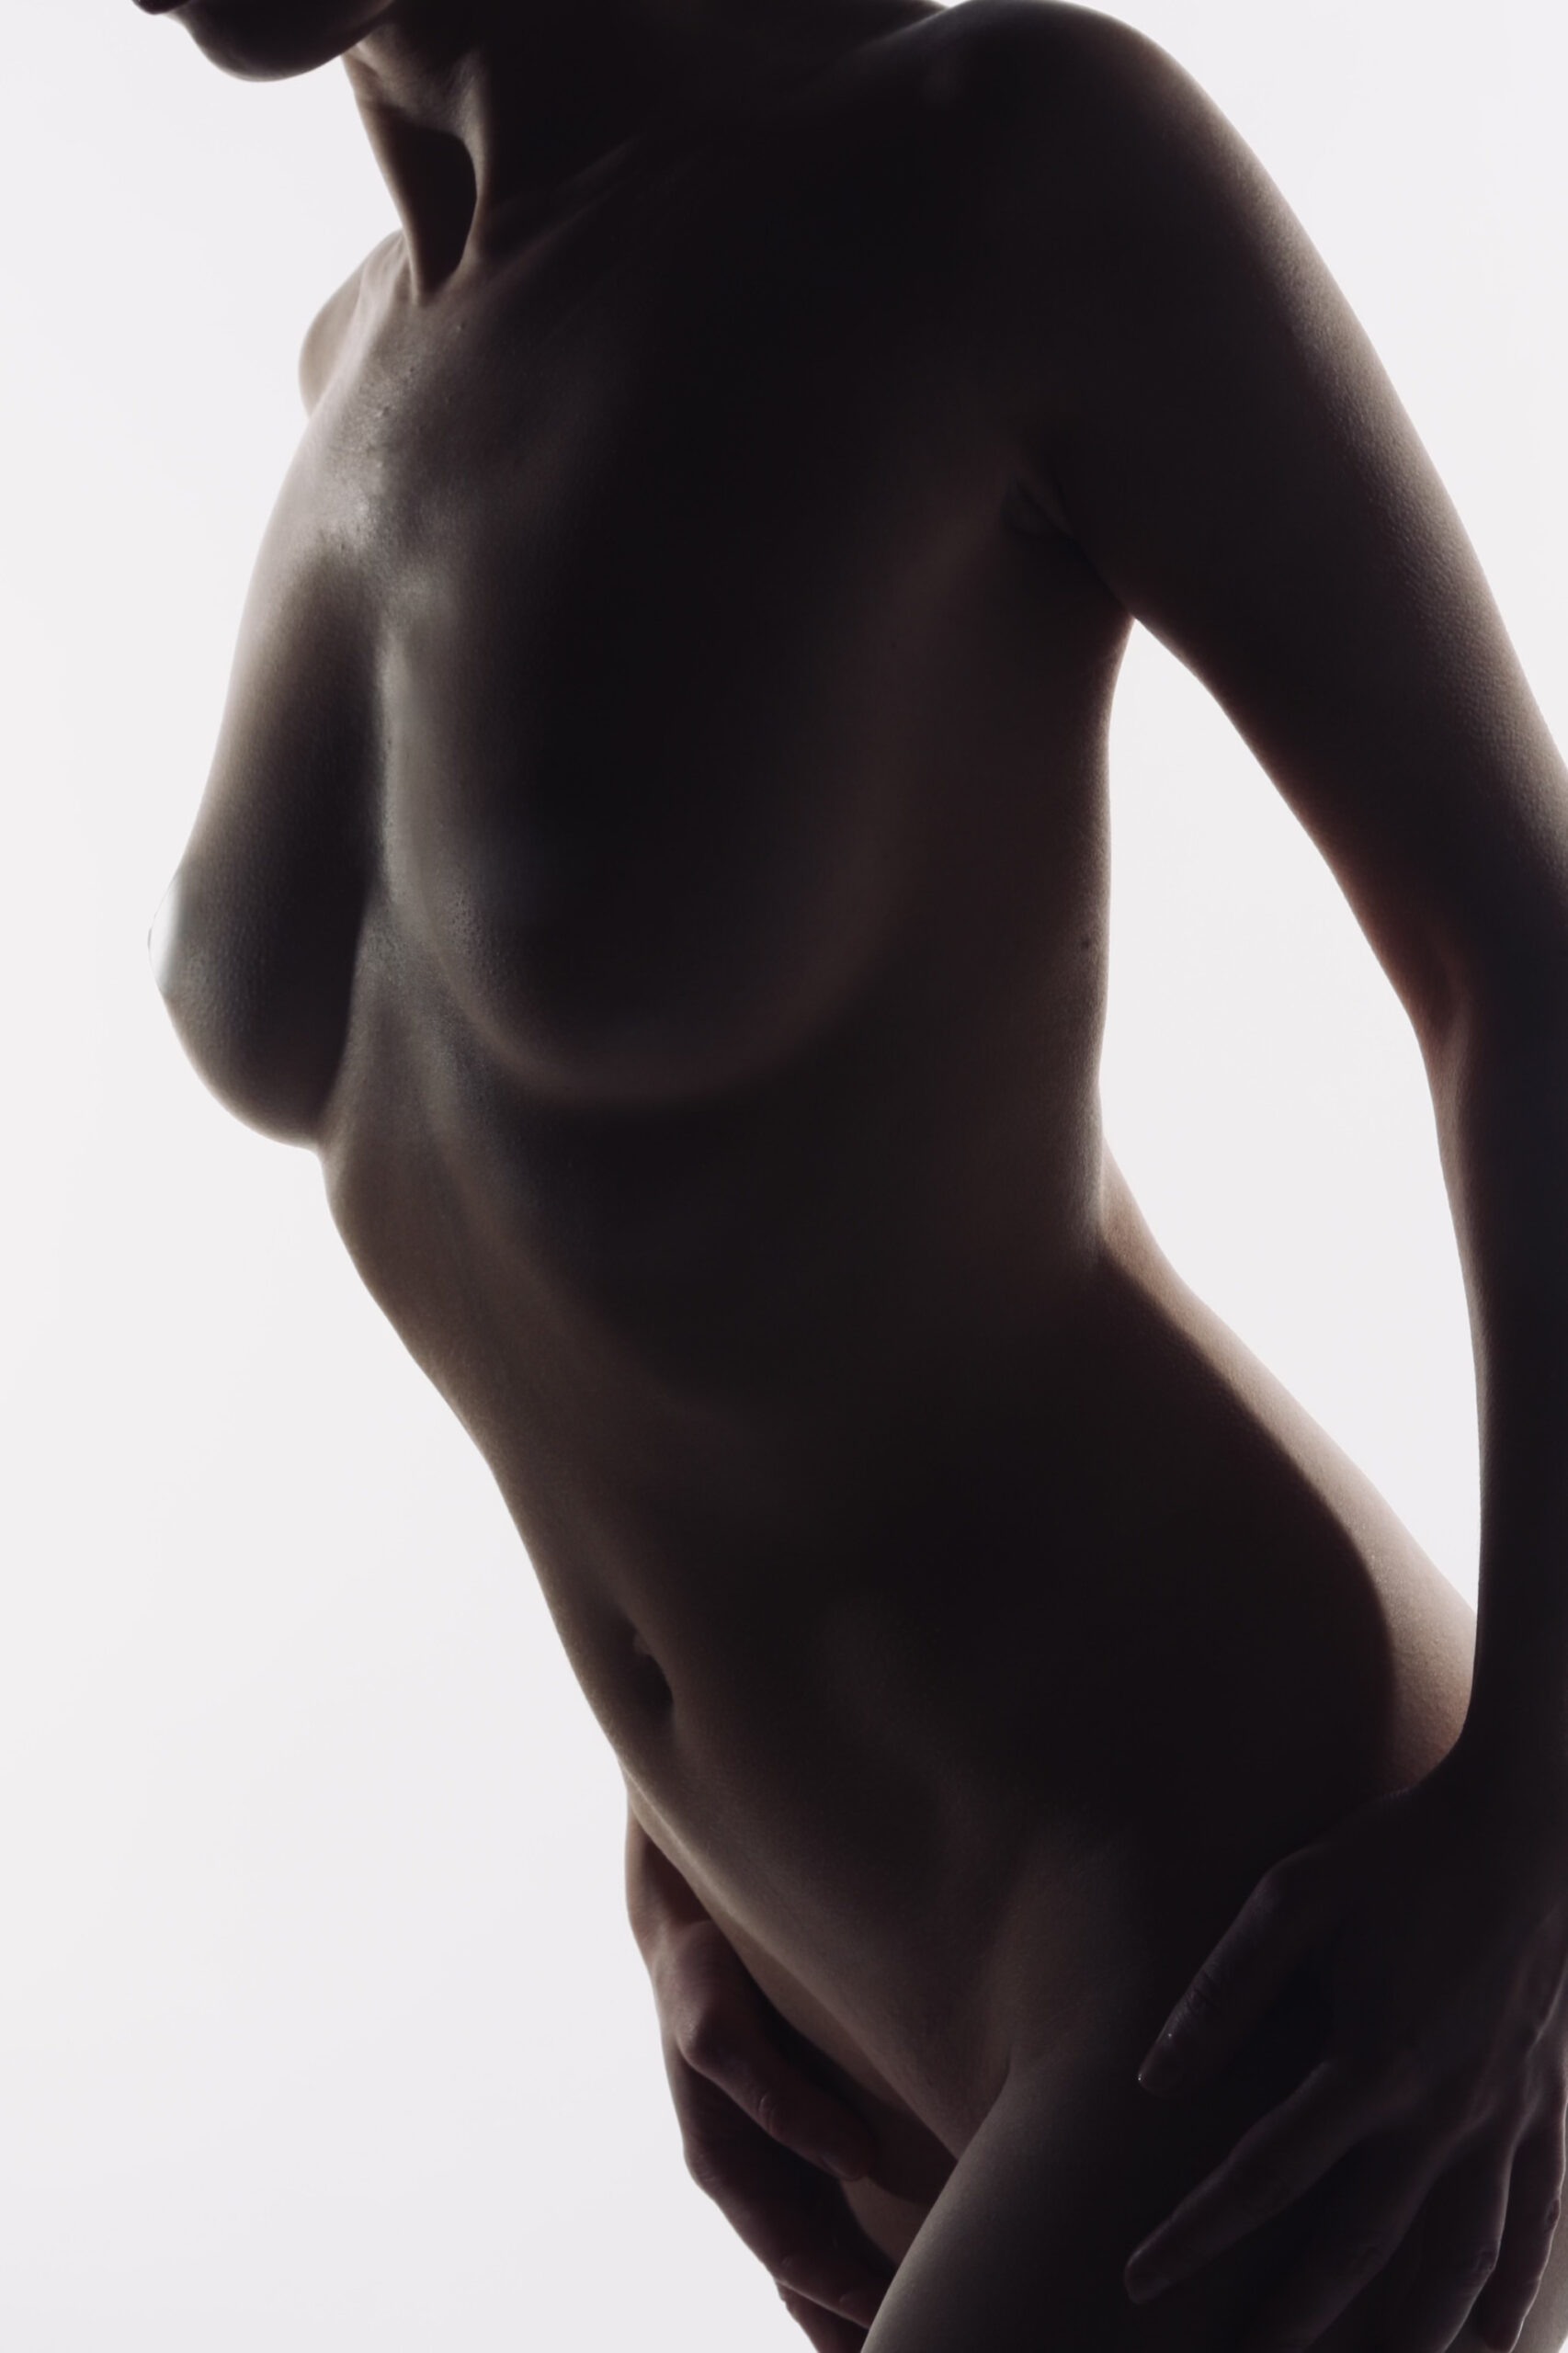 Ein weiblicher Körper mit einer schönen Brust.